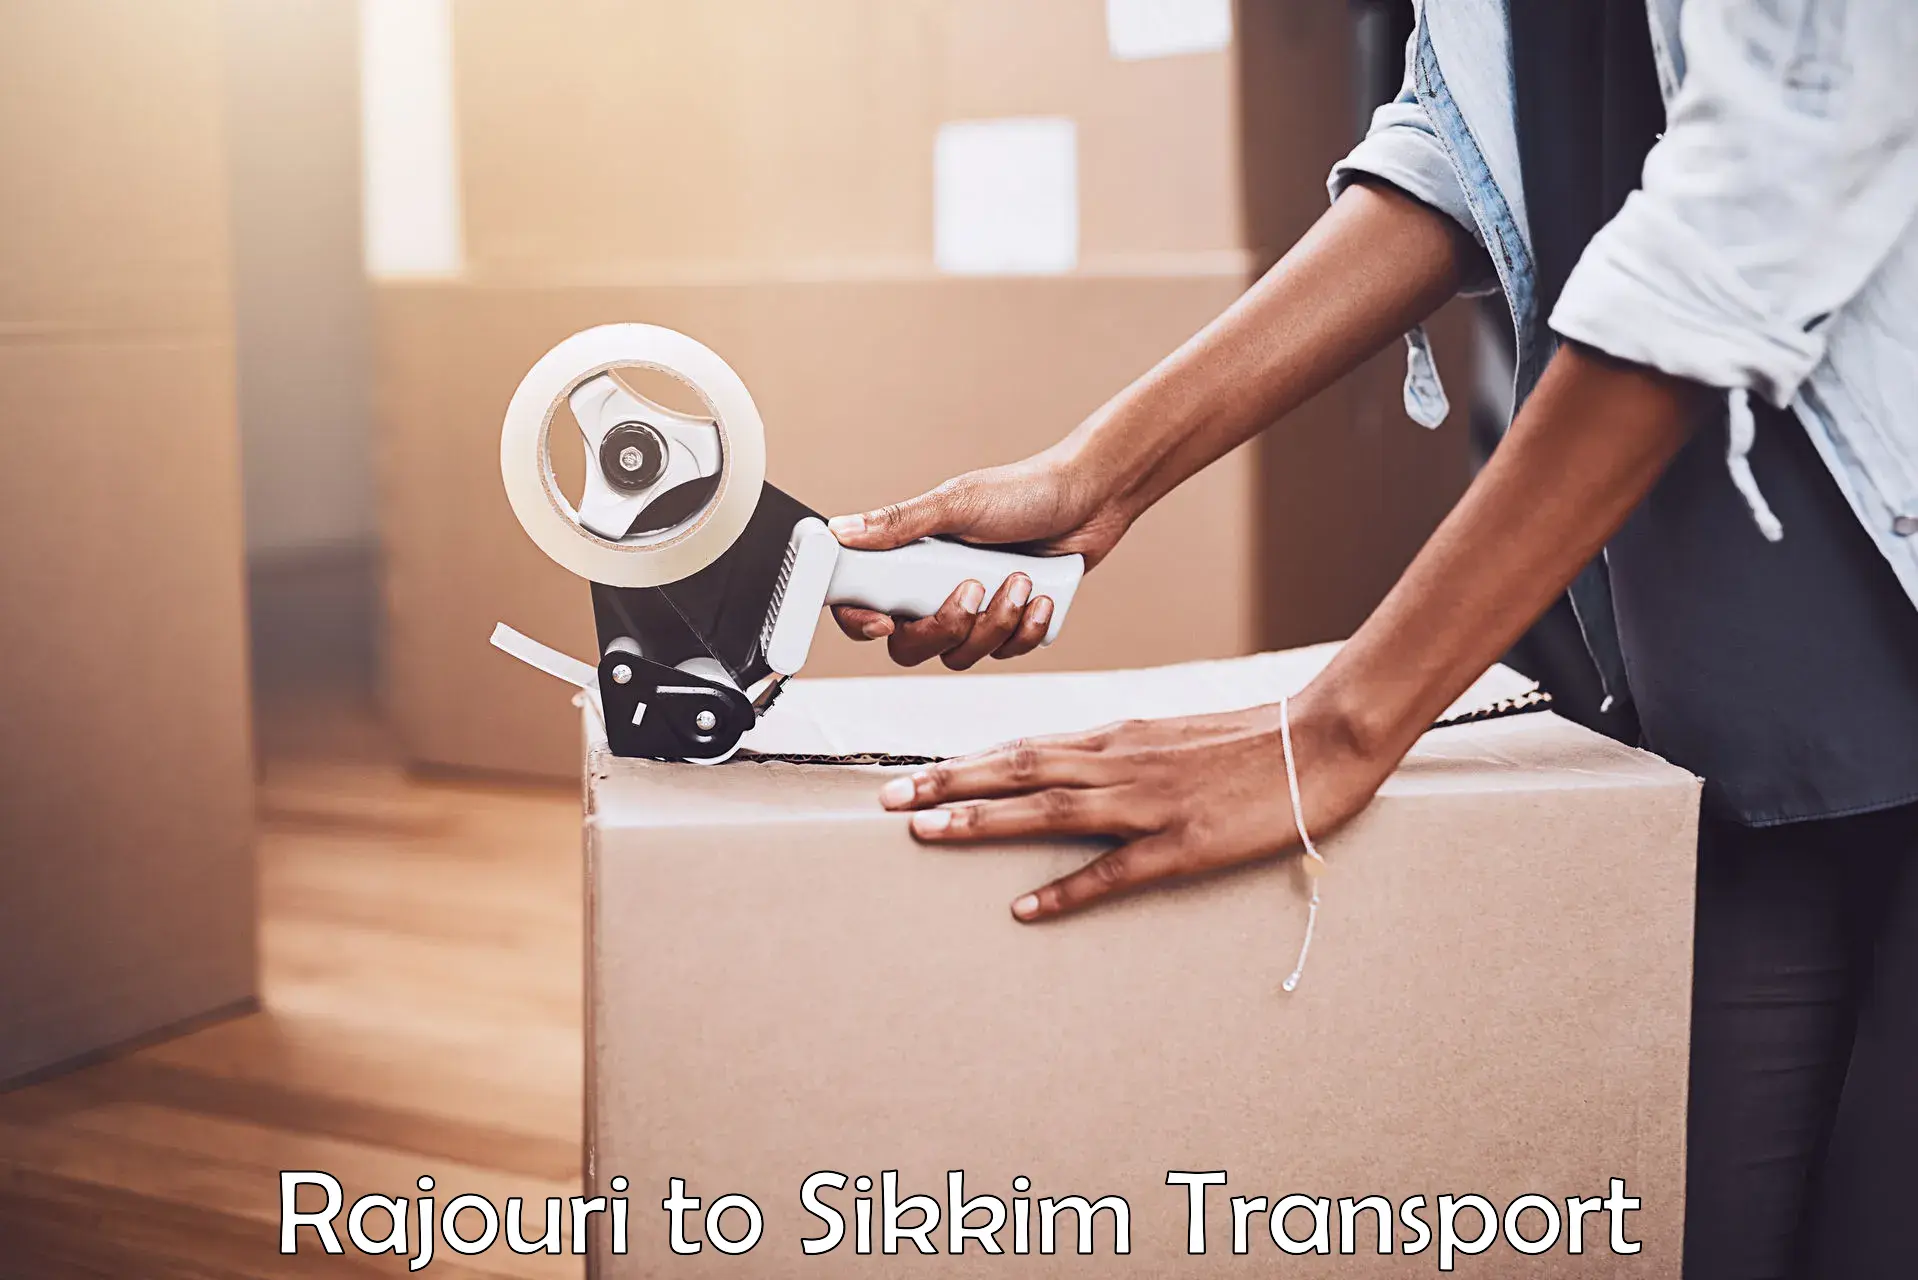 Furniture transport service Rajouri to Sikkim